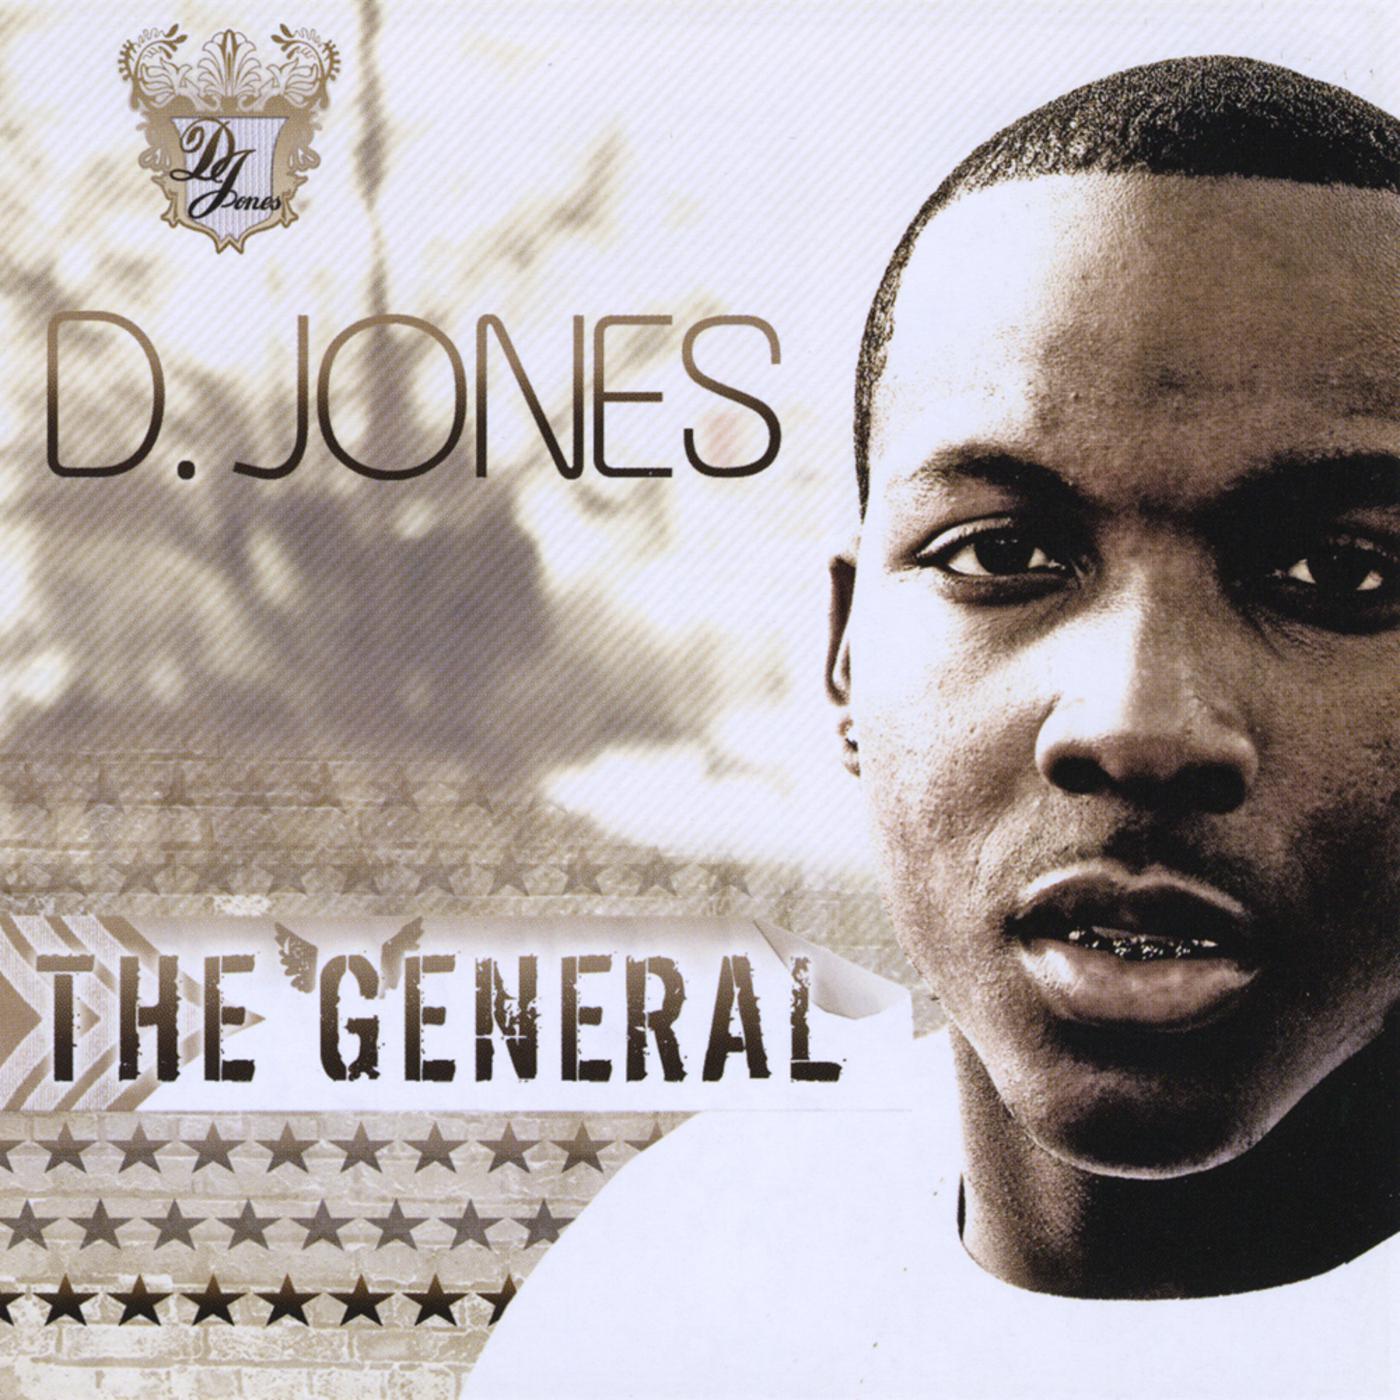 D. Jones - Closure